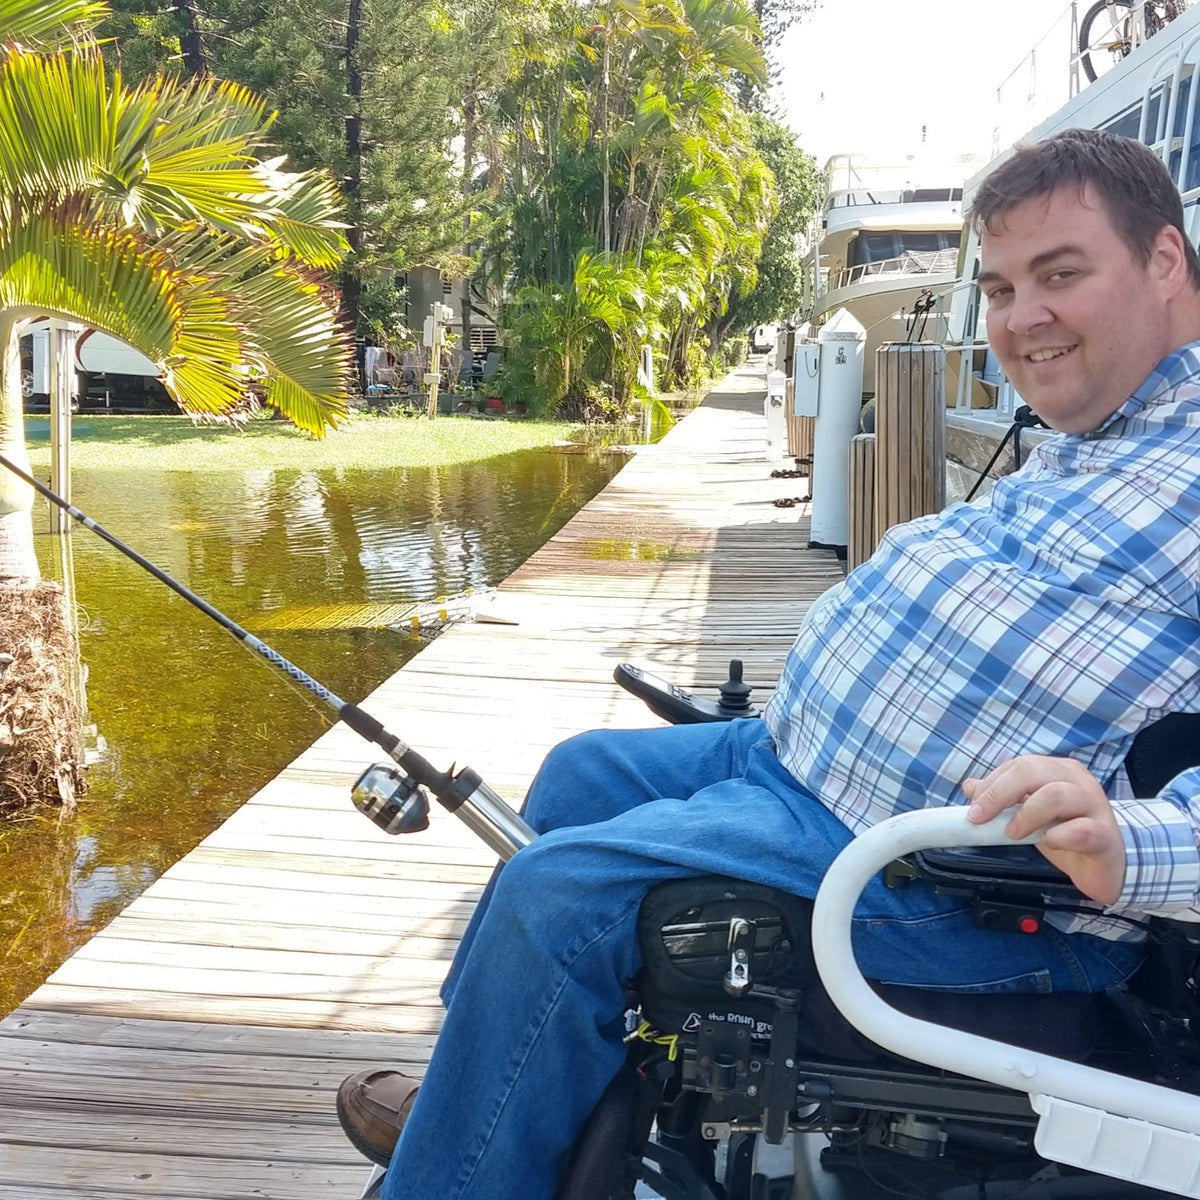 Mpowr balıkçılık v3 tekerlekli sandalye demeti